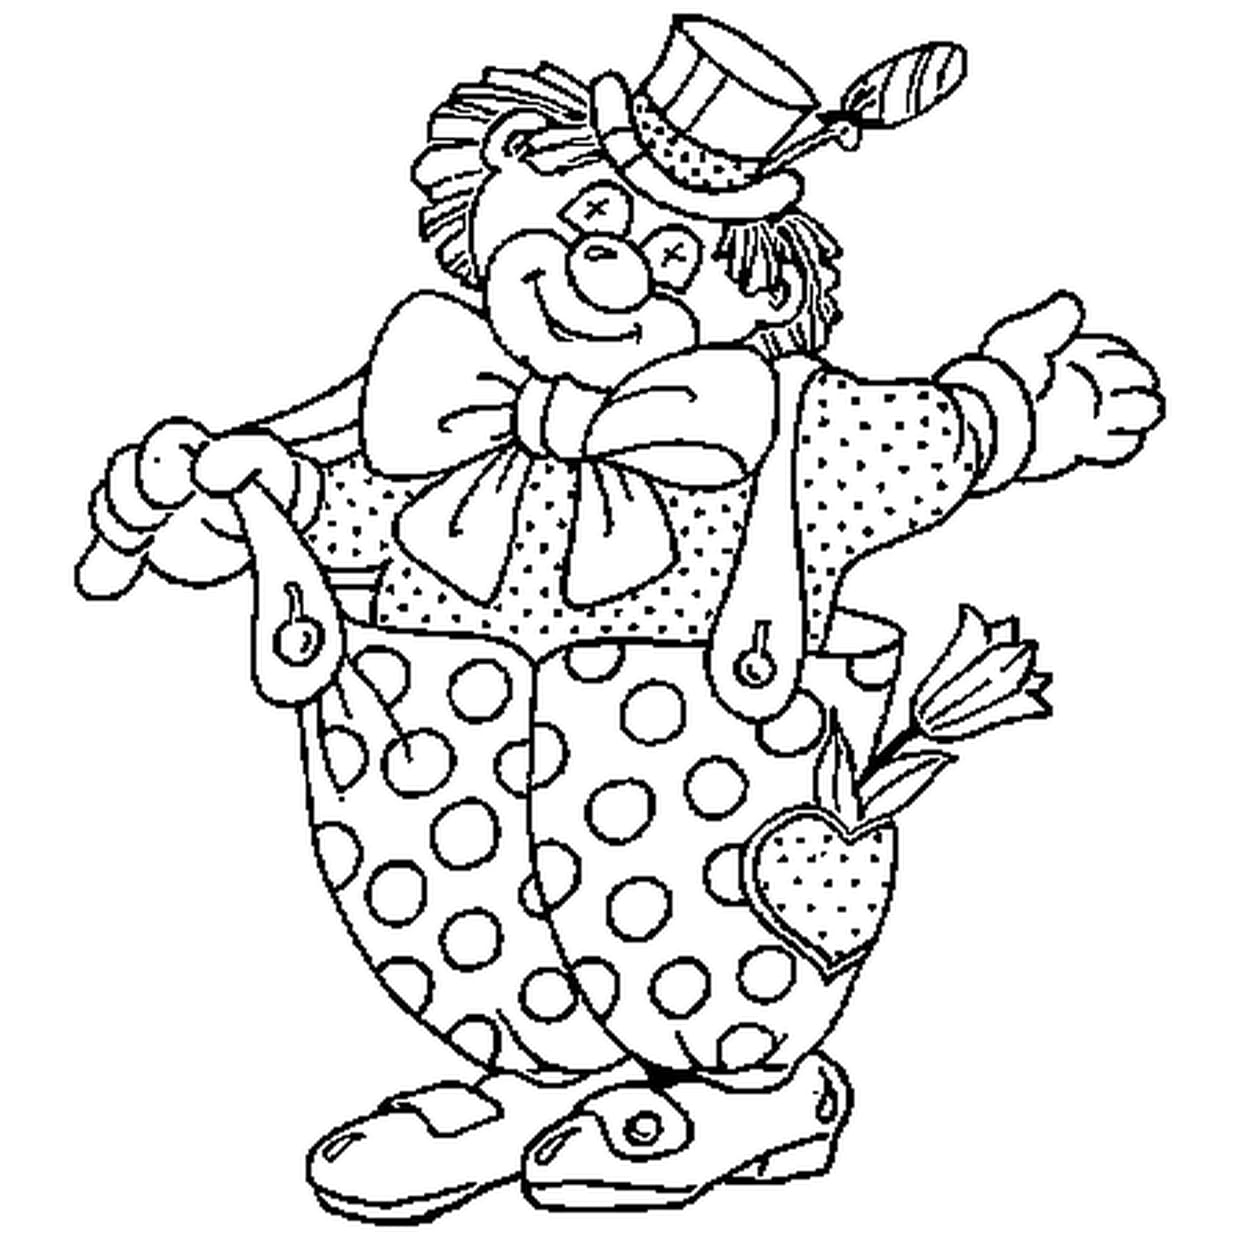 Клоун раскраска для детей 4 5. Клоун раскраска. Клоун раскраска для детей. Клоун для раскрашивания детям. Веселый клоун раскраска.